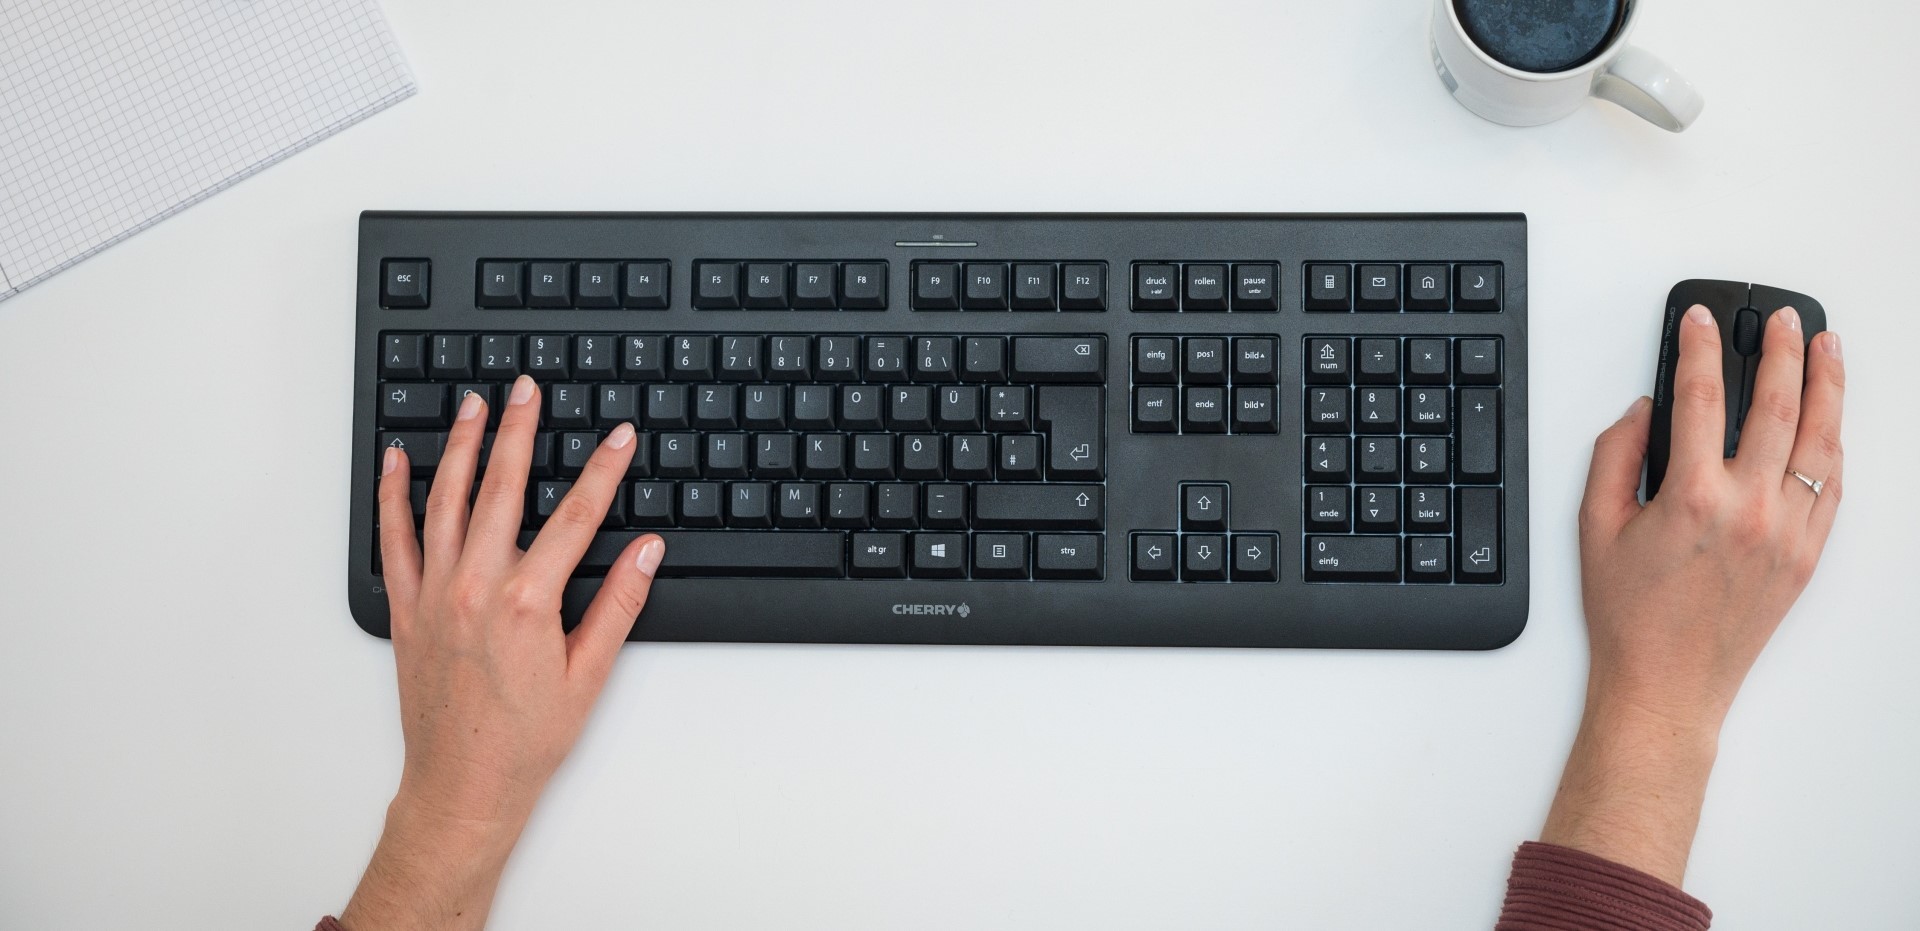 Draufsicht auf eine Tastatur, Maus und zwei Hände